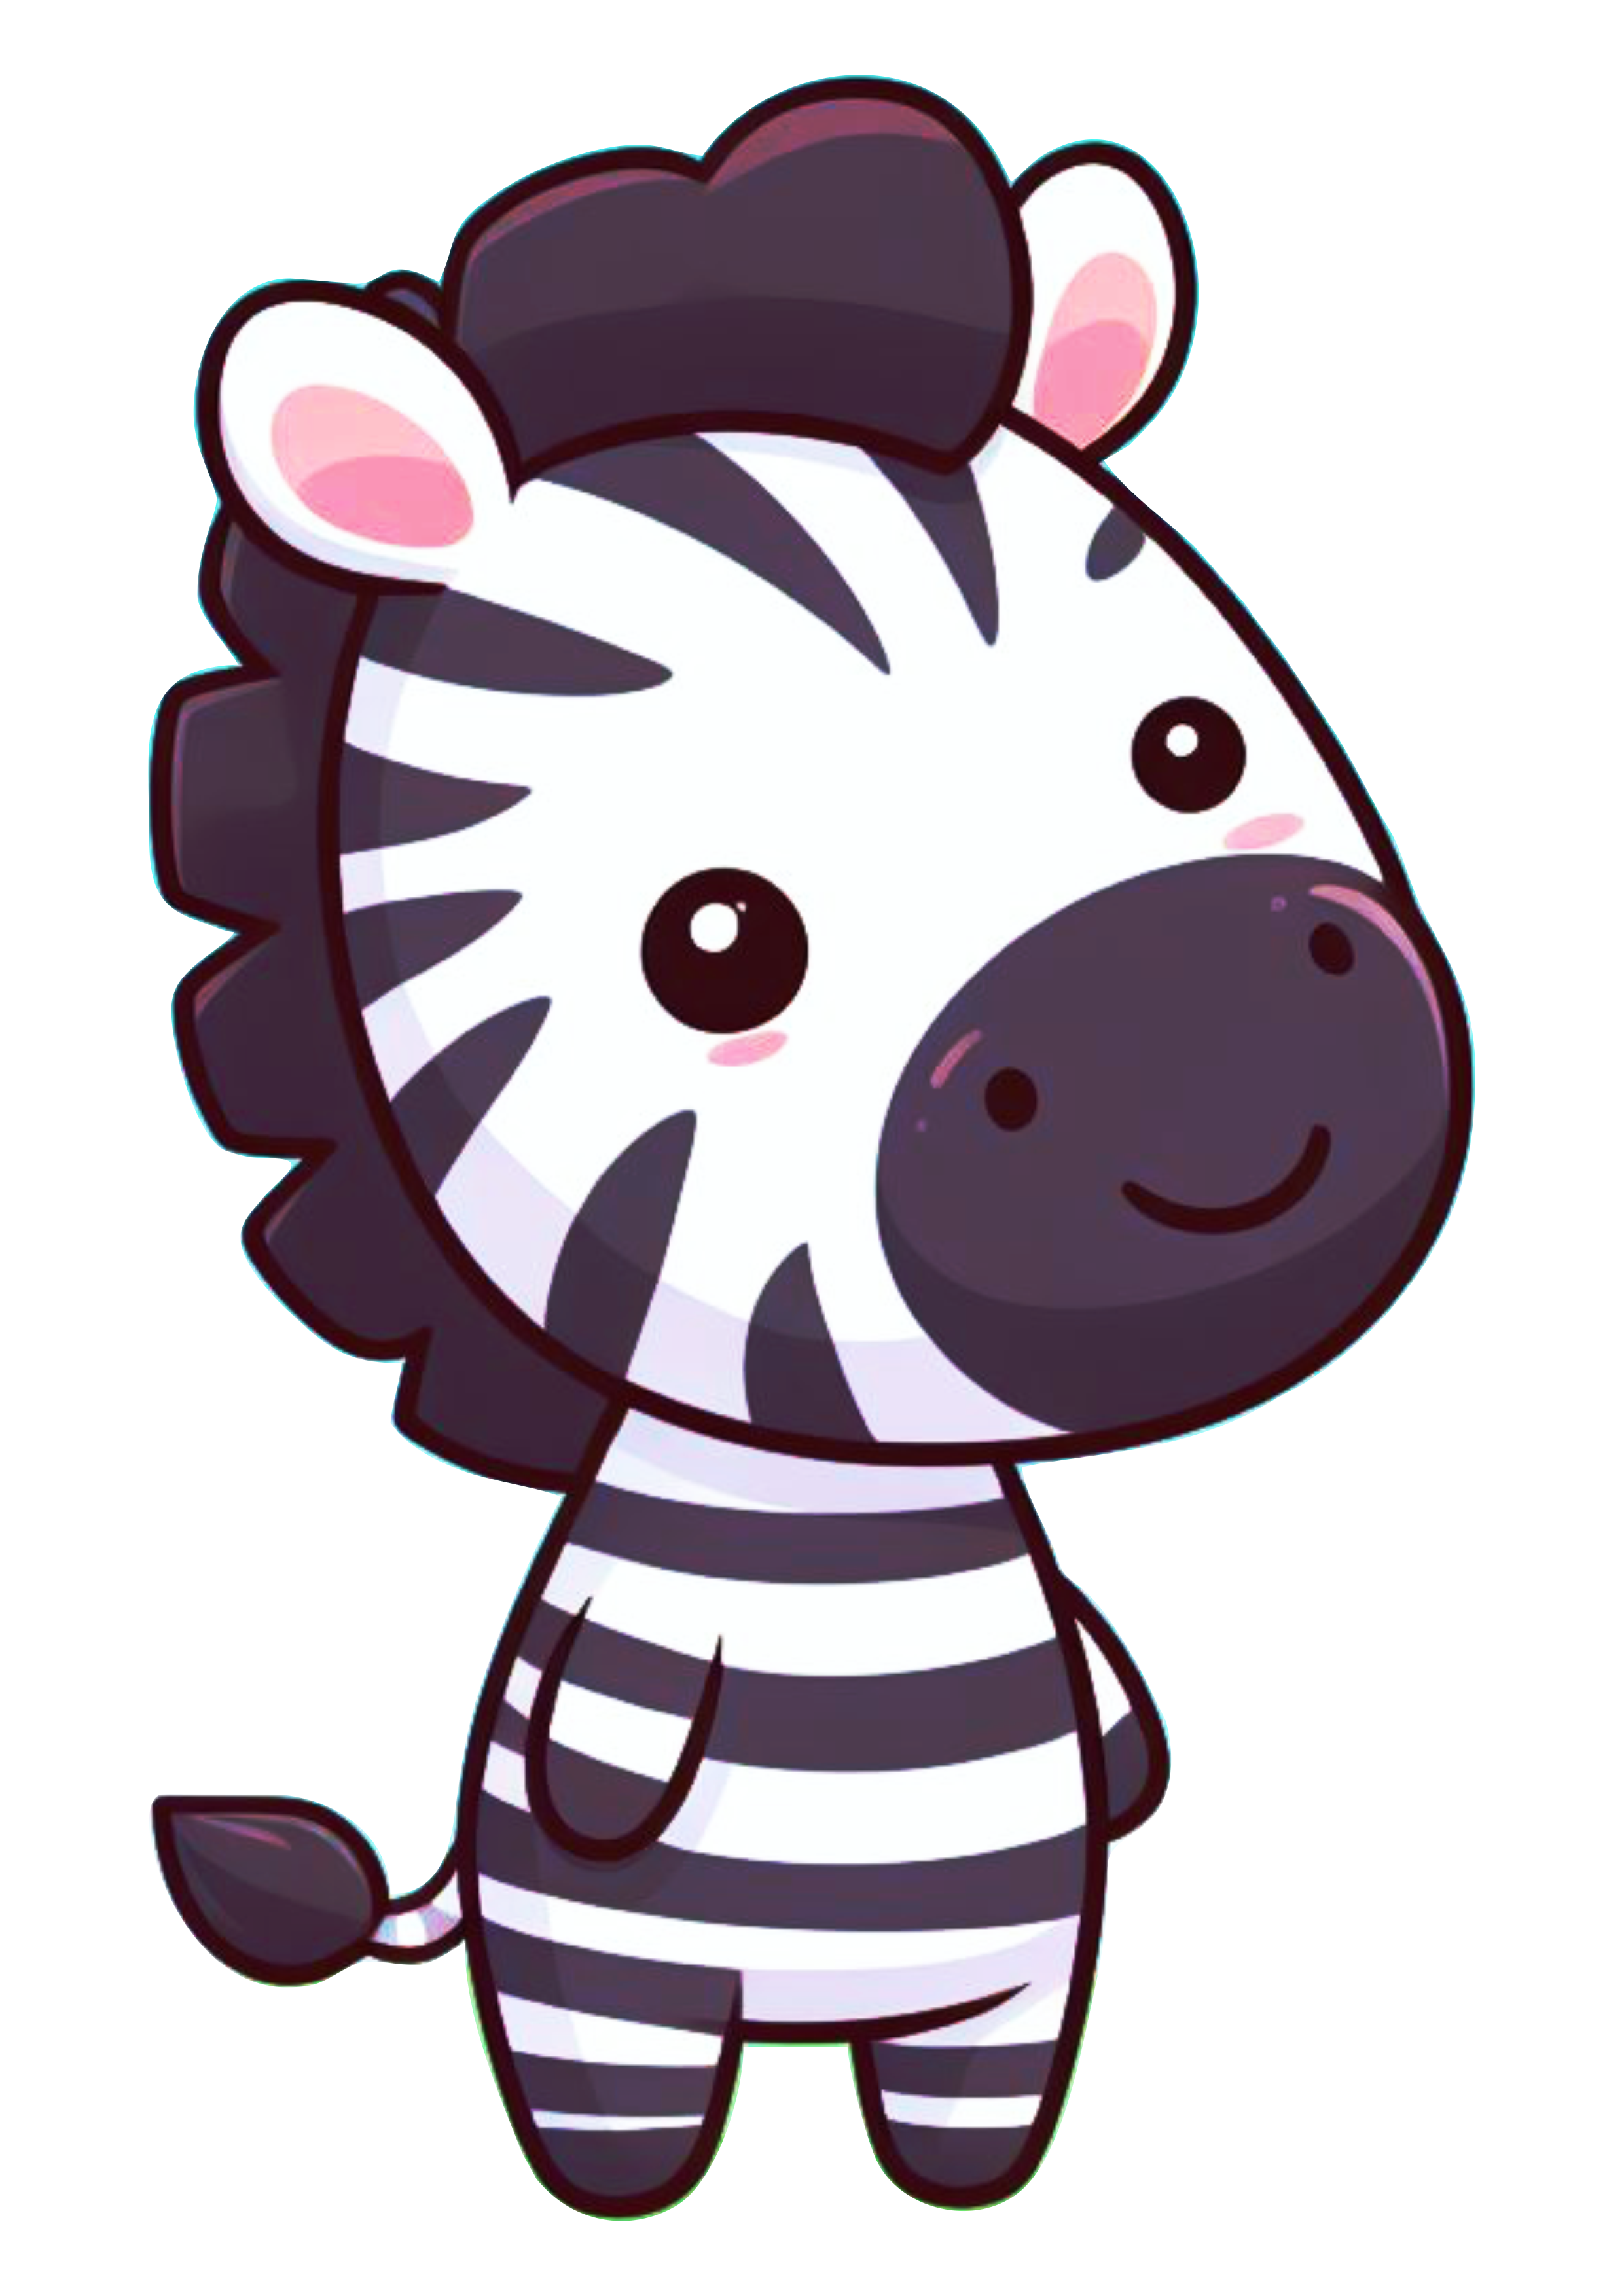 Animais do safari png zebra desenho simples fundo transparente para designer zebrinha png